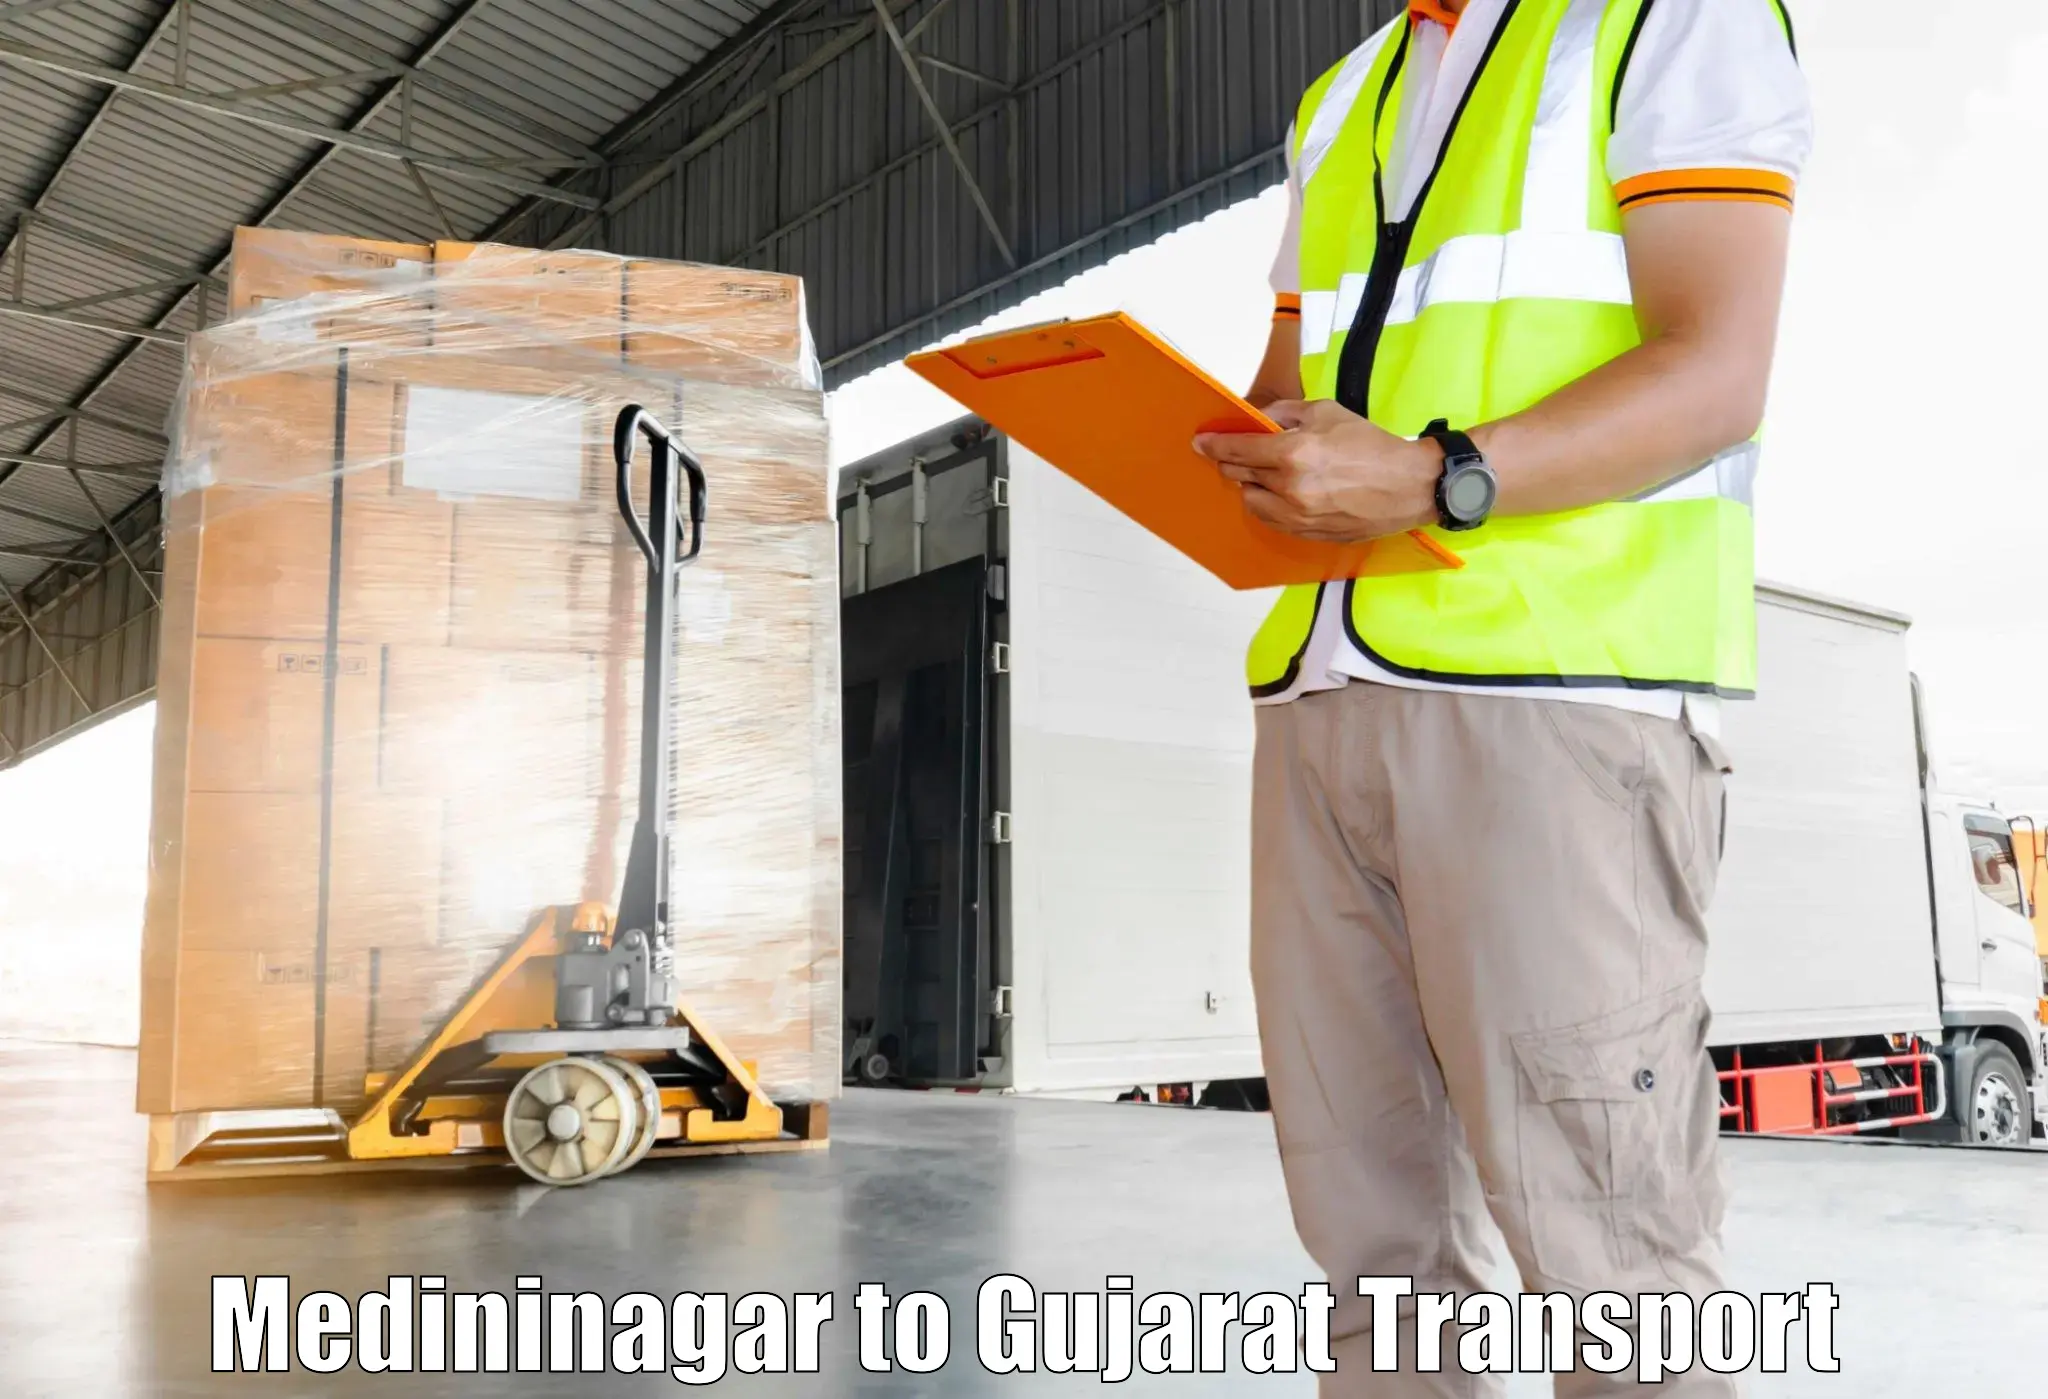 Daily parcel service transport Medininagar to Banaskantha